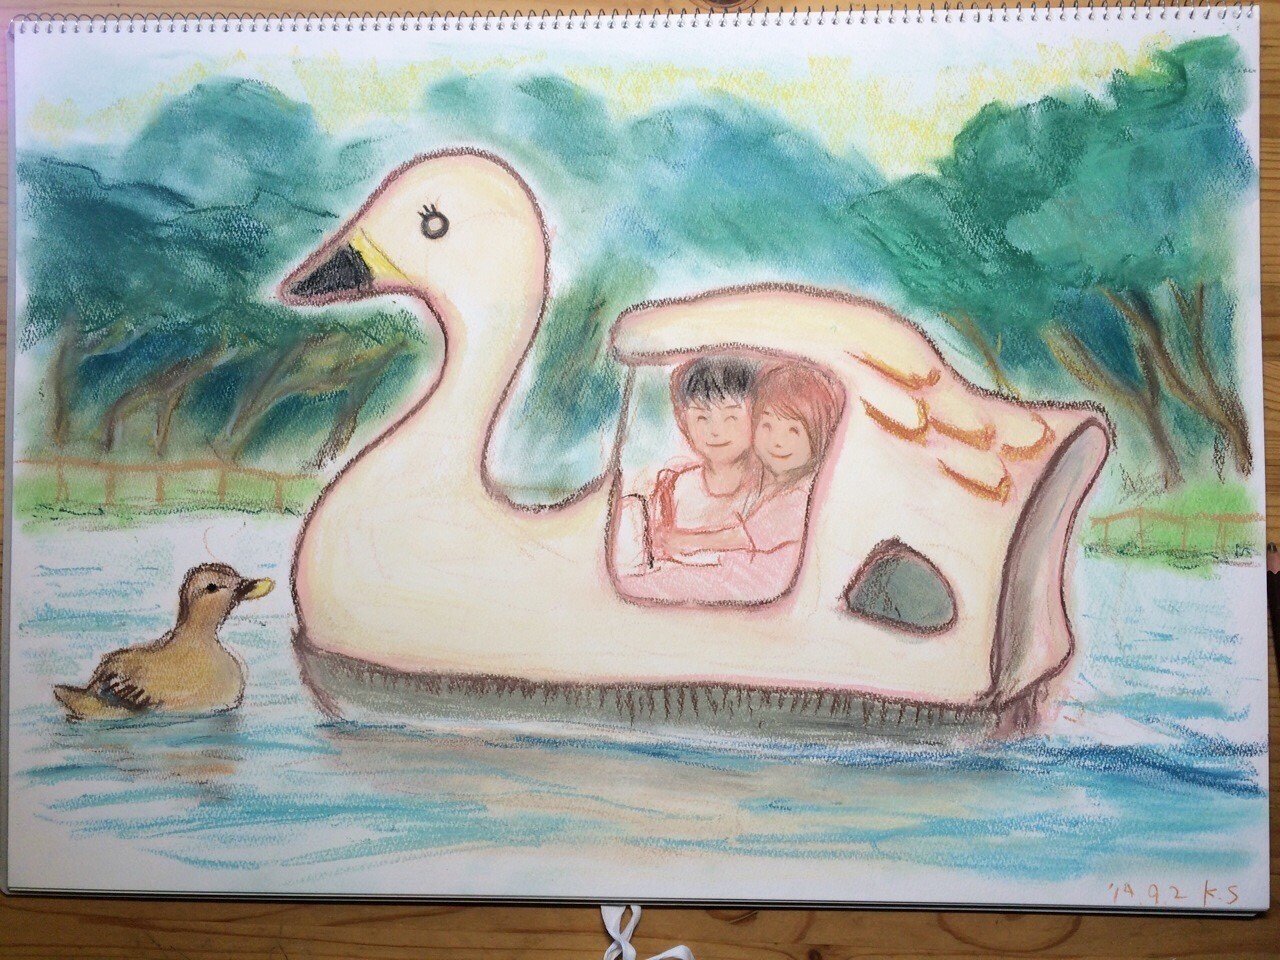 井の頭公園のスワンボートに乗る恋人 篠𠩤健太 Animist Note